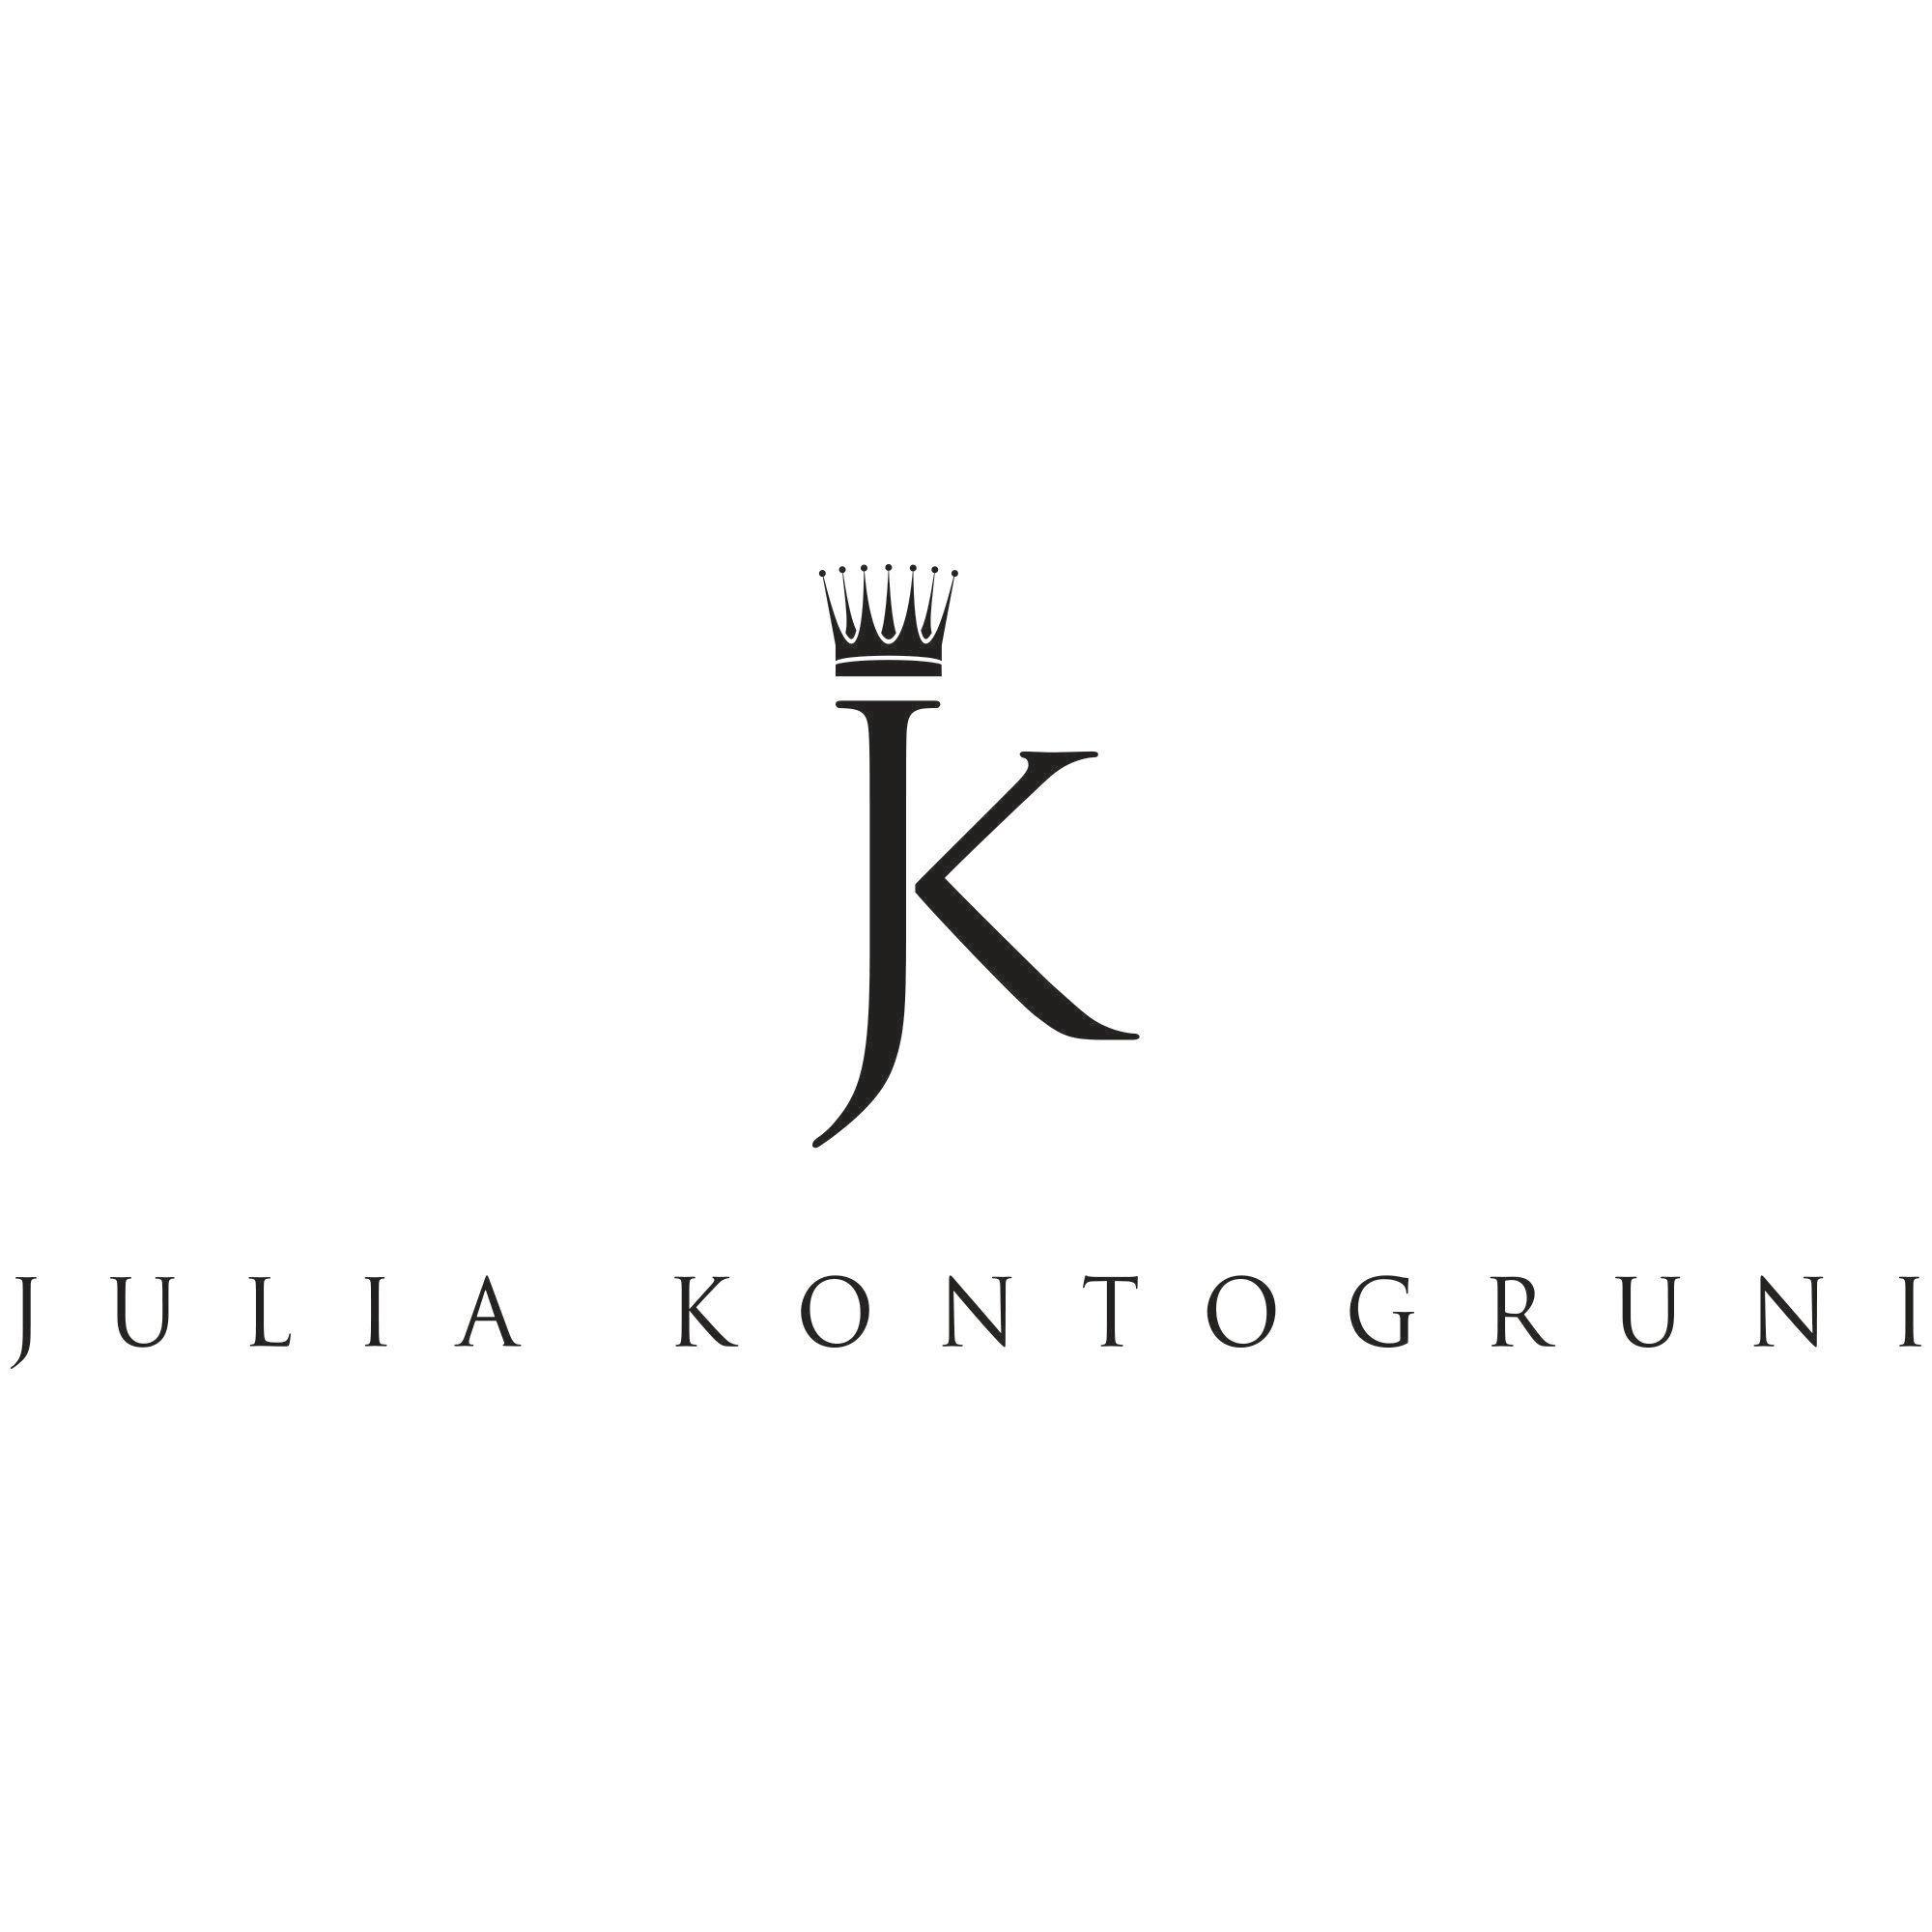 Jk Logo - File:JK logo 1.1.jpg - Wikimedia Commons